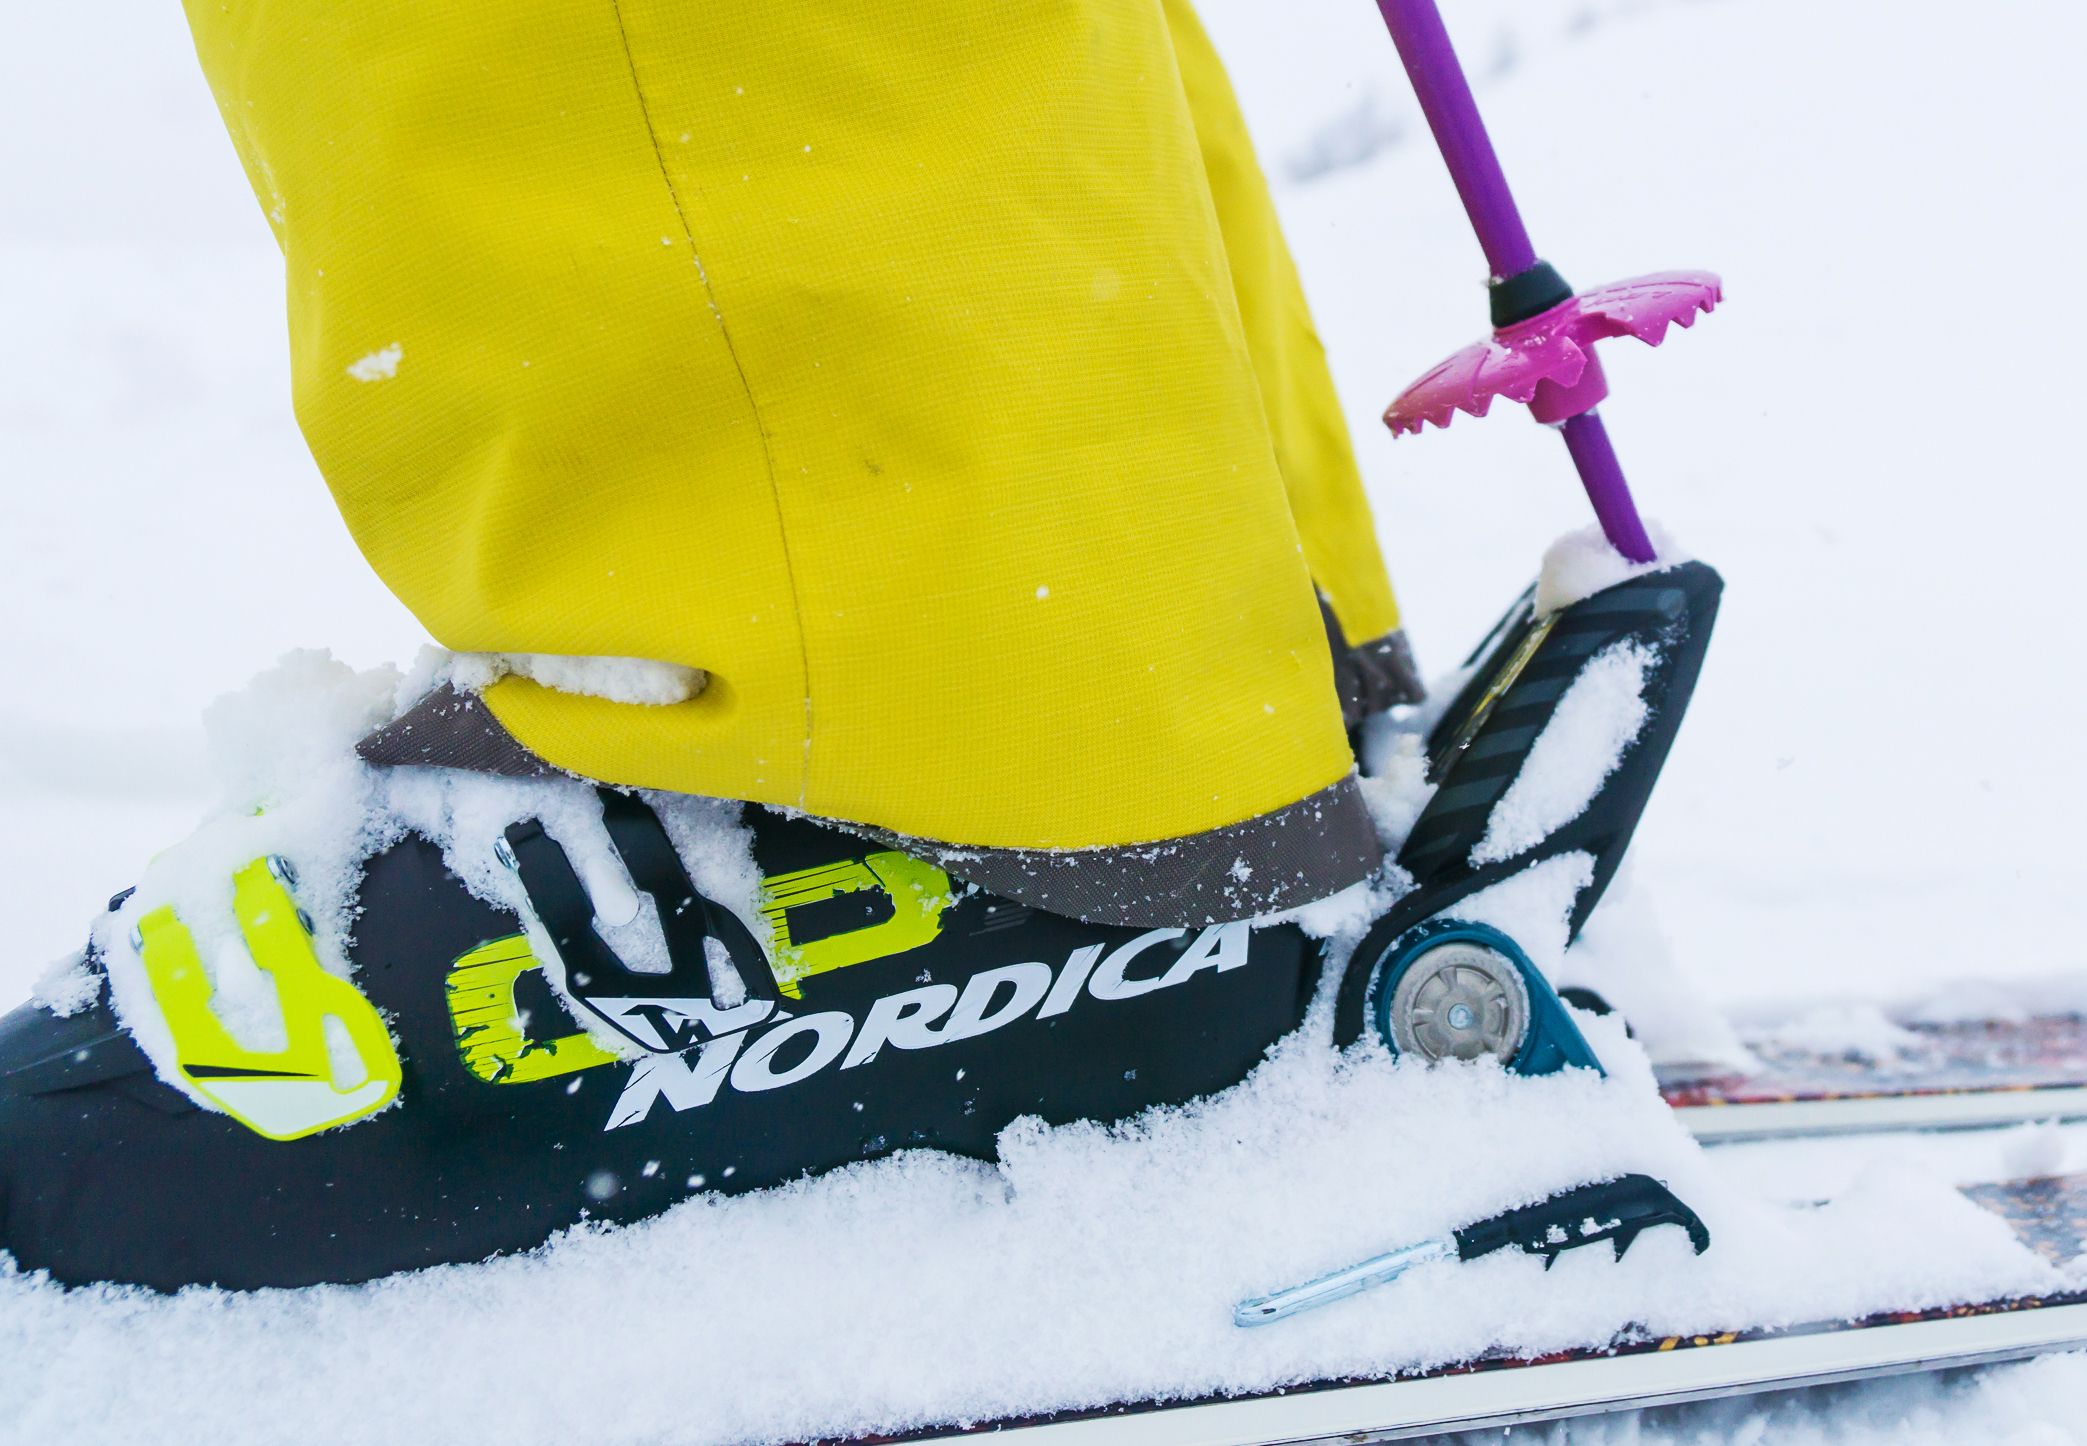 auteursrechten ik ben ziek personeelszaken De grote skischoenen gebruiksaanwijzing - Wintersport weblog